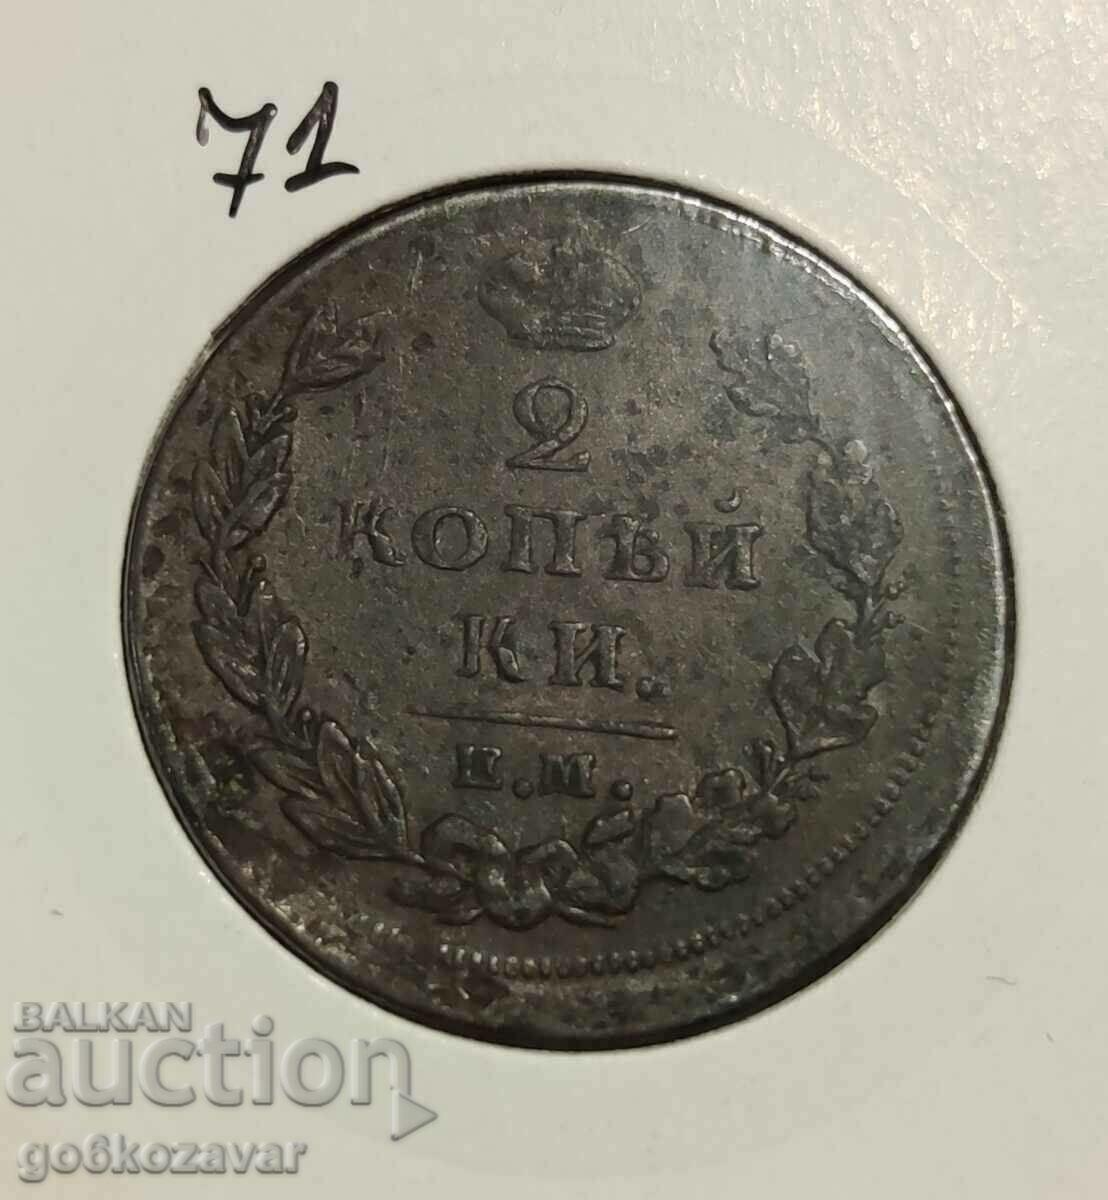 Russia 2 kopecks 1811 Rare coin!